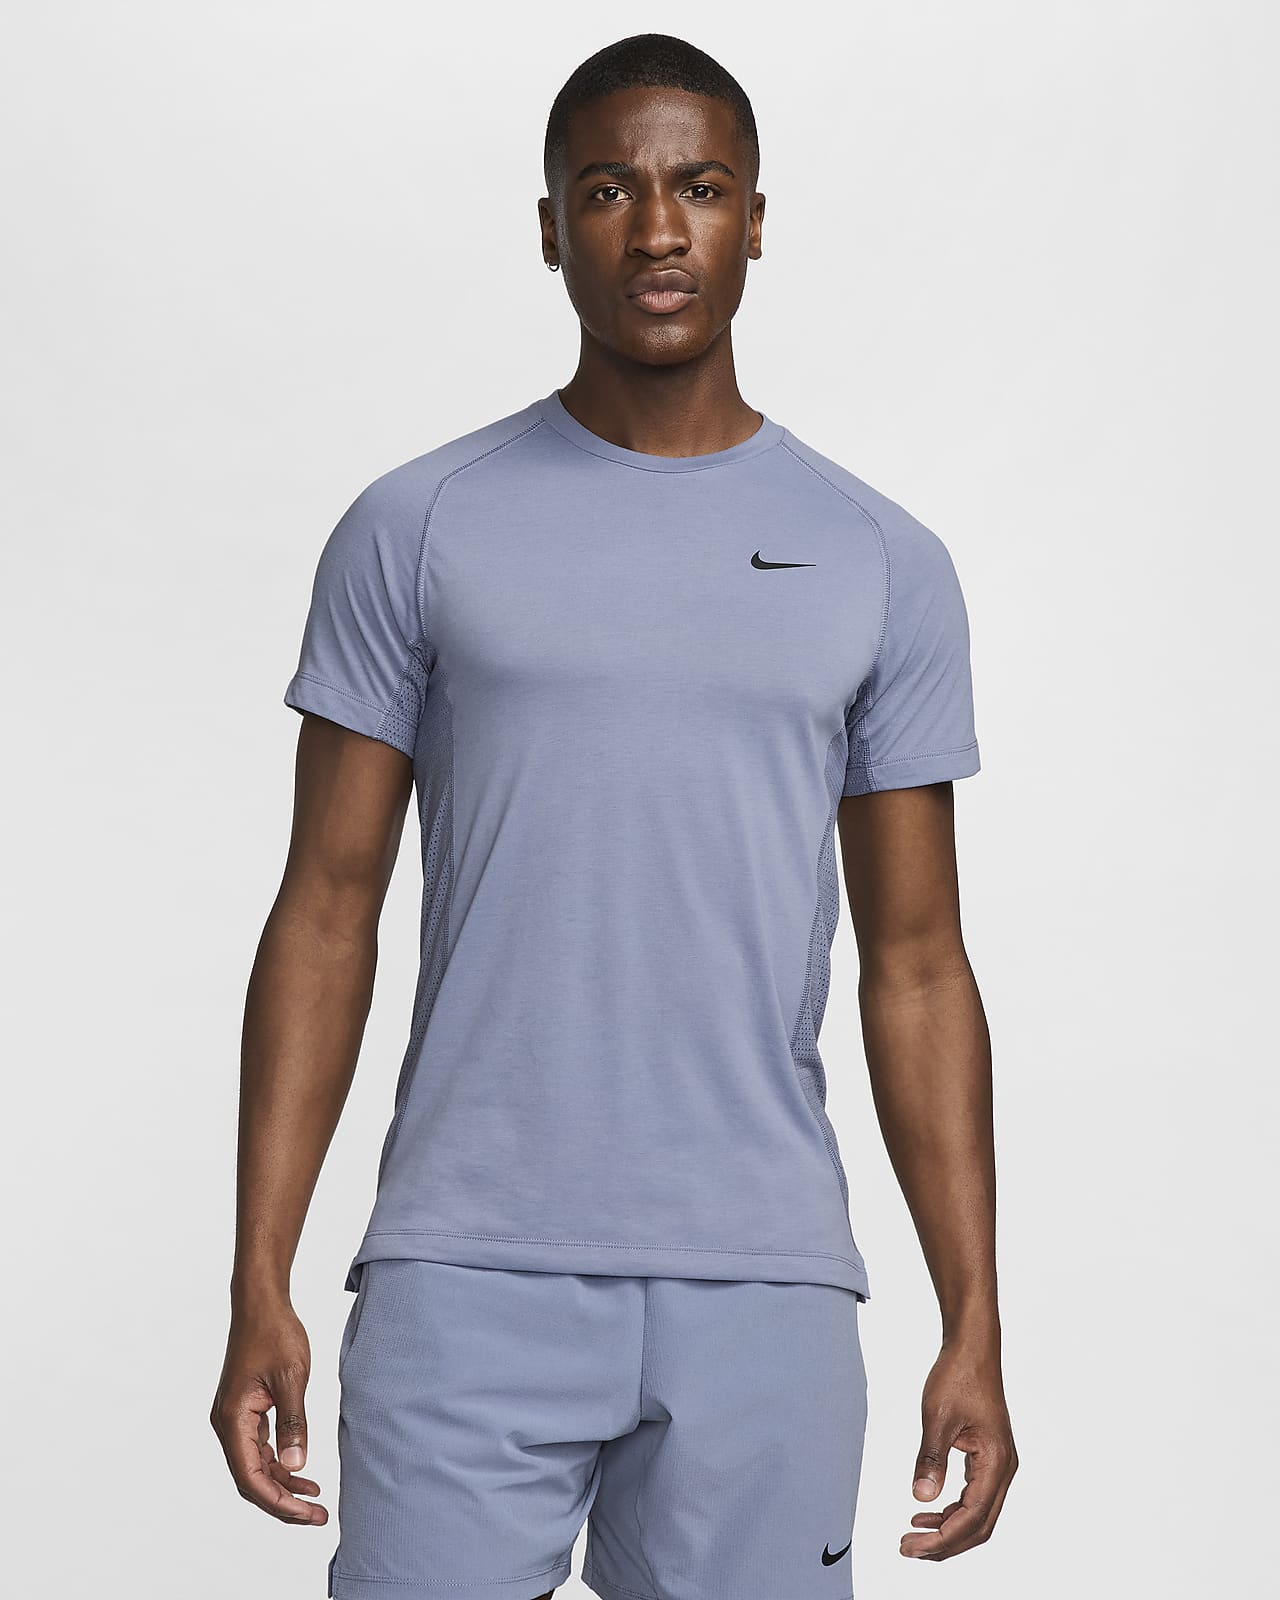 Ανδρική κοντομάνικη μπλούζα fitness Dri-FIT Nike Flex Rep